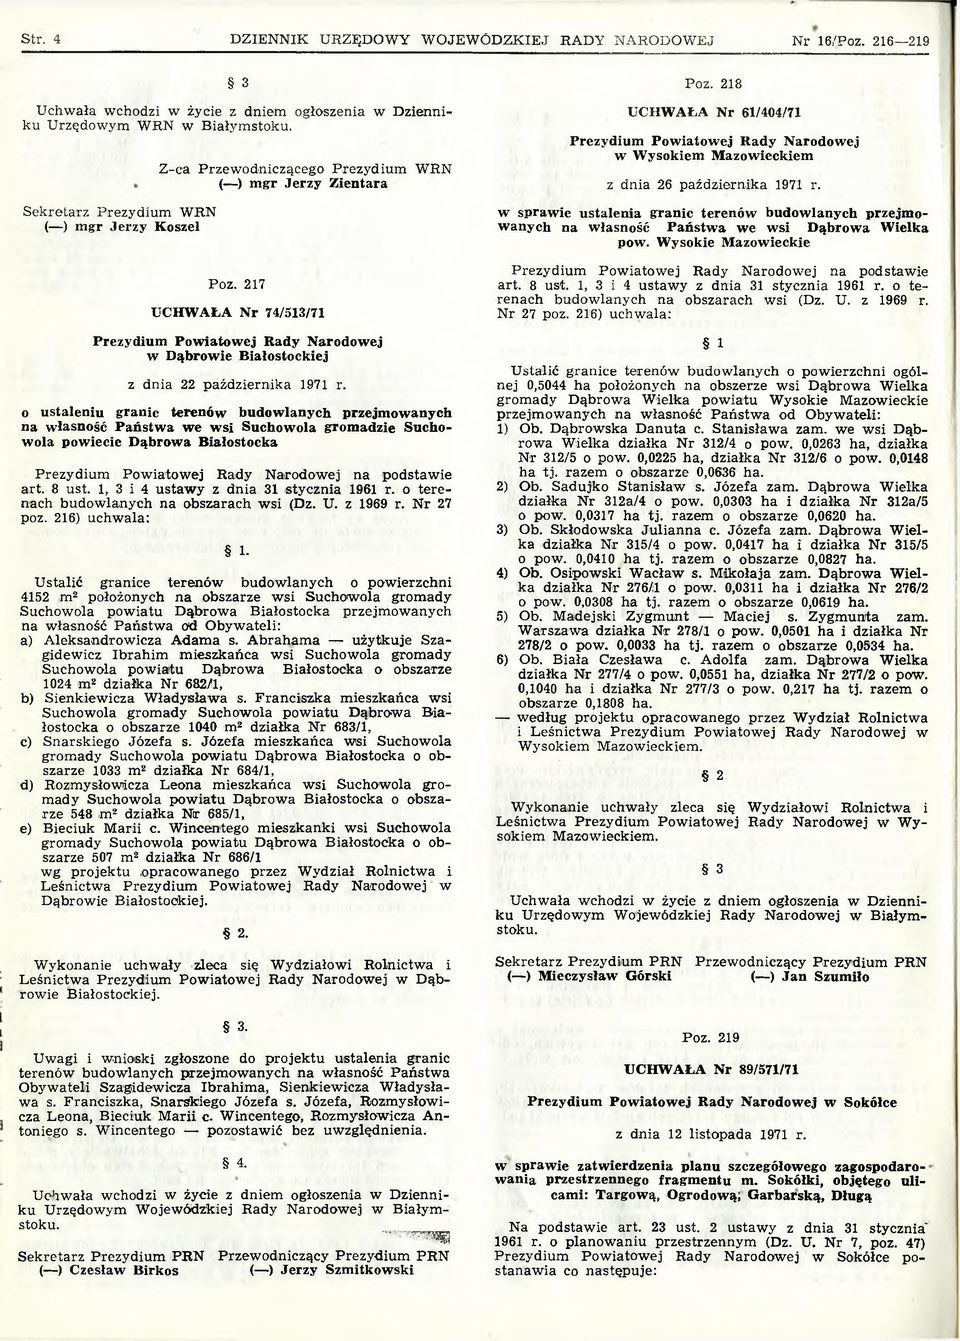 217 UCHWAŁA Nr 74/513/71 Prezydium Powiatowej Rady Narodowej w Dąbrowie Białostockiej z dnia 22 października 1971 r.